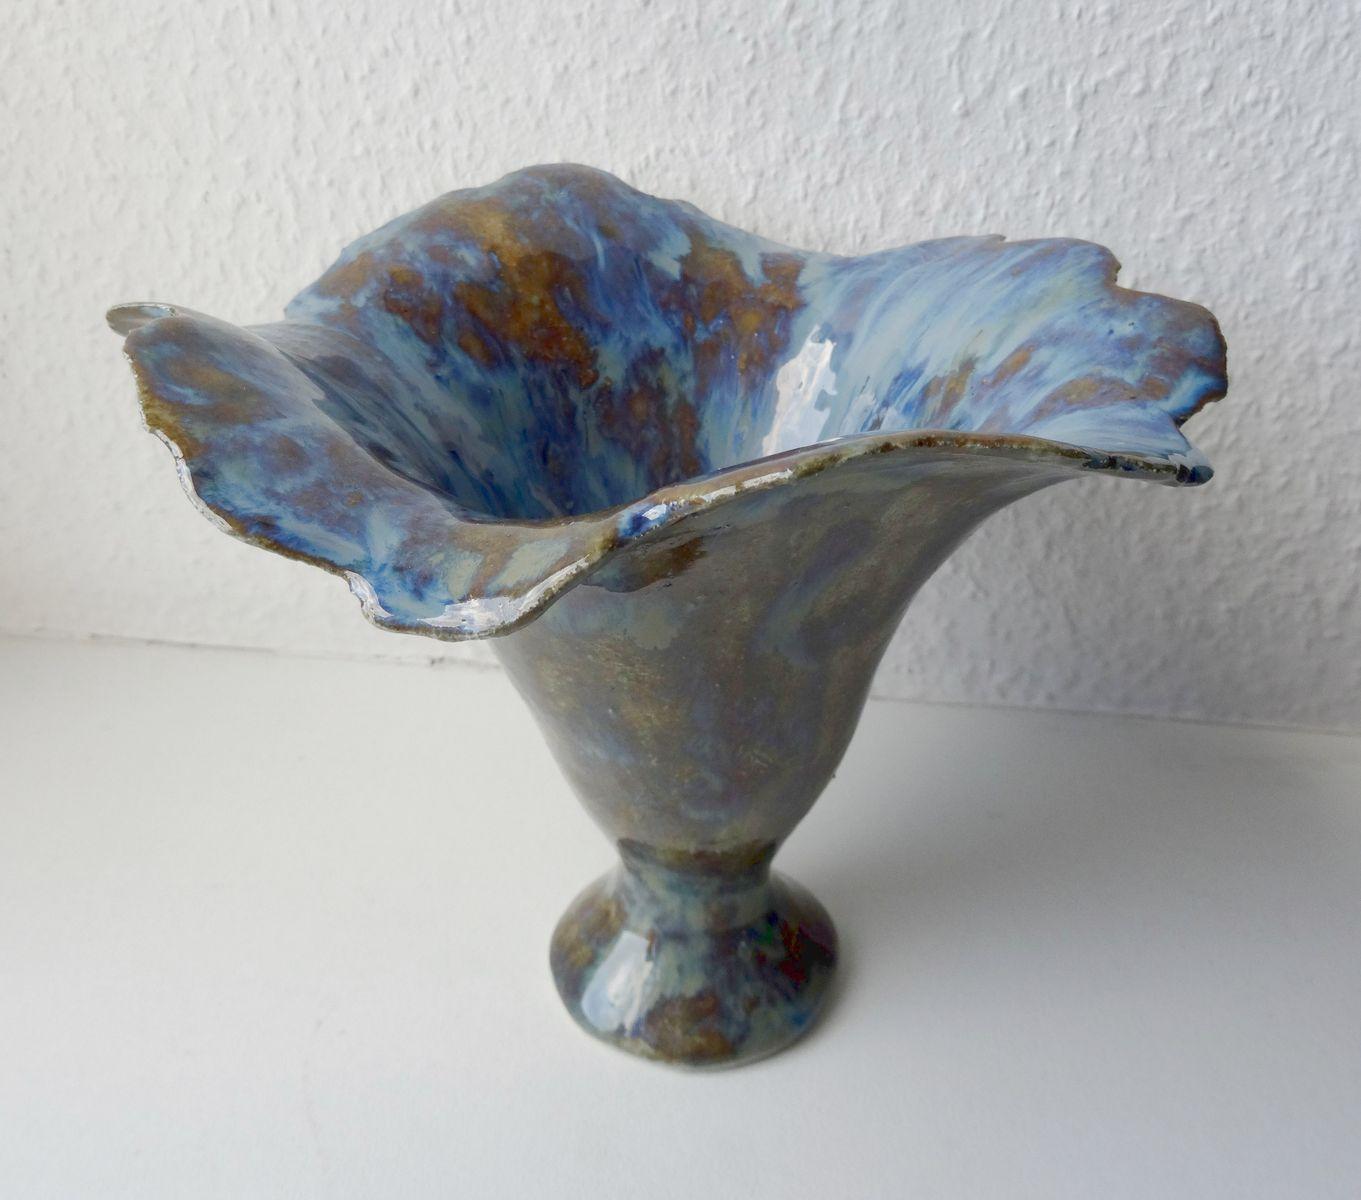 Blaue Blume aus der Vase. 2017. Steinmass, H 13 cm, Durchmesser 15,5 cm